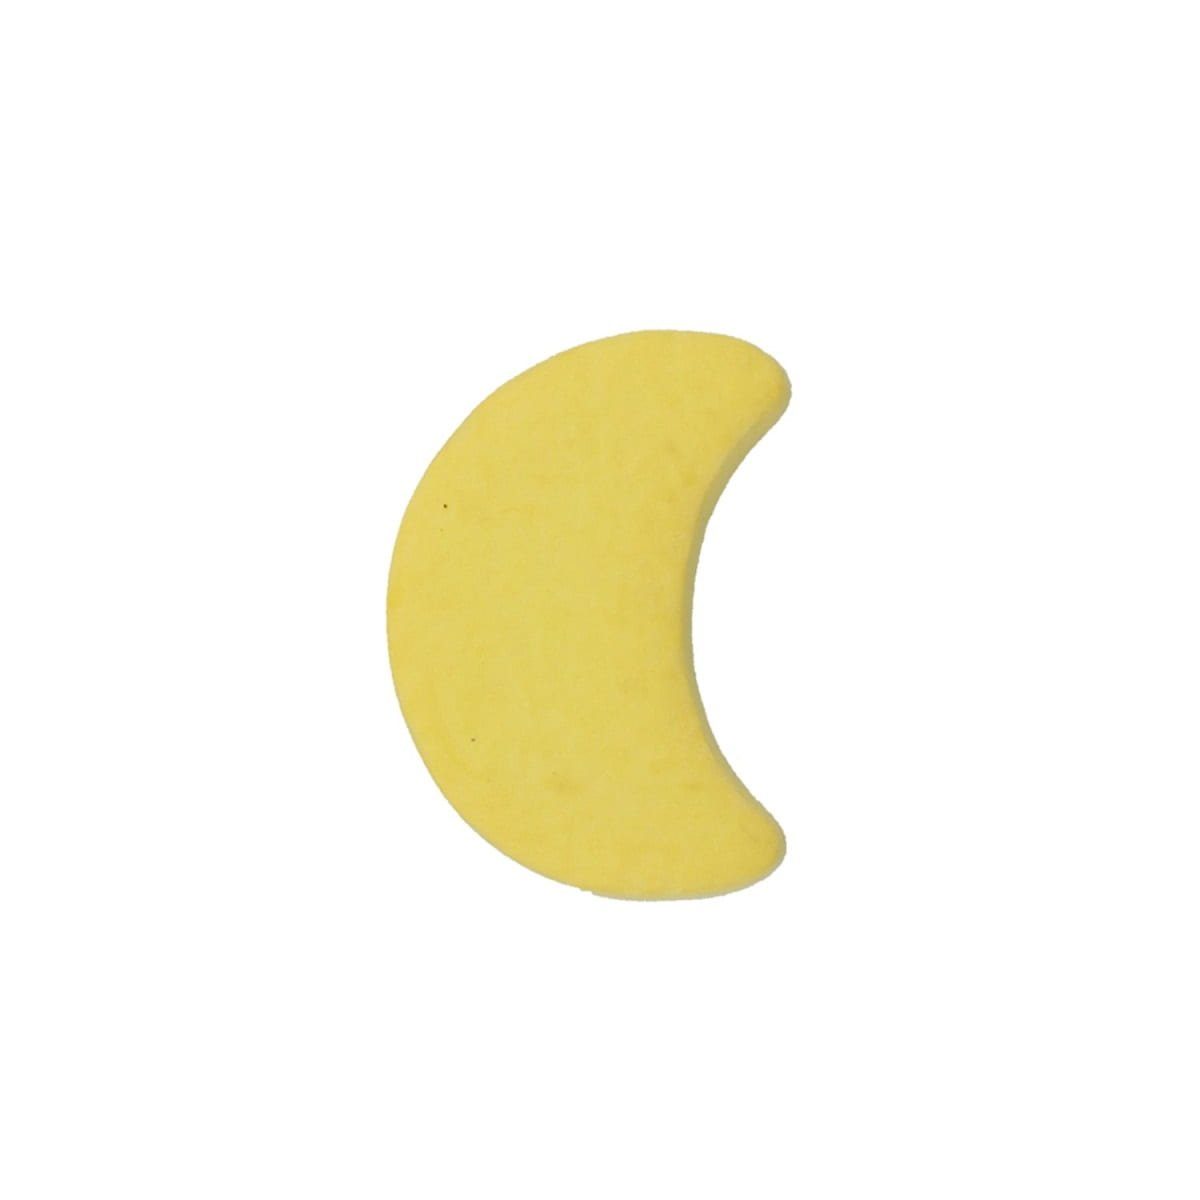 MS Beschläge Türbeschlag Möbelknopf Kindermöbelknopf Modell Gelber Mond